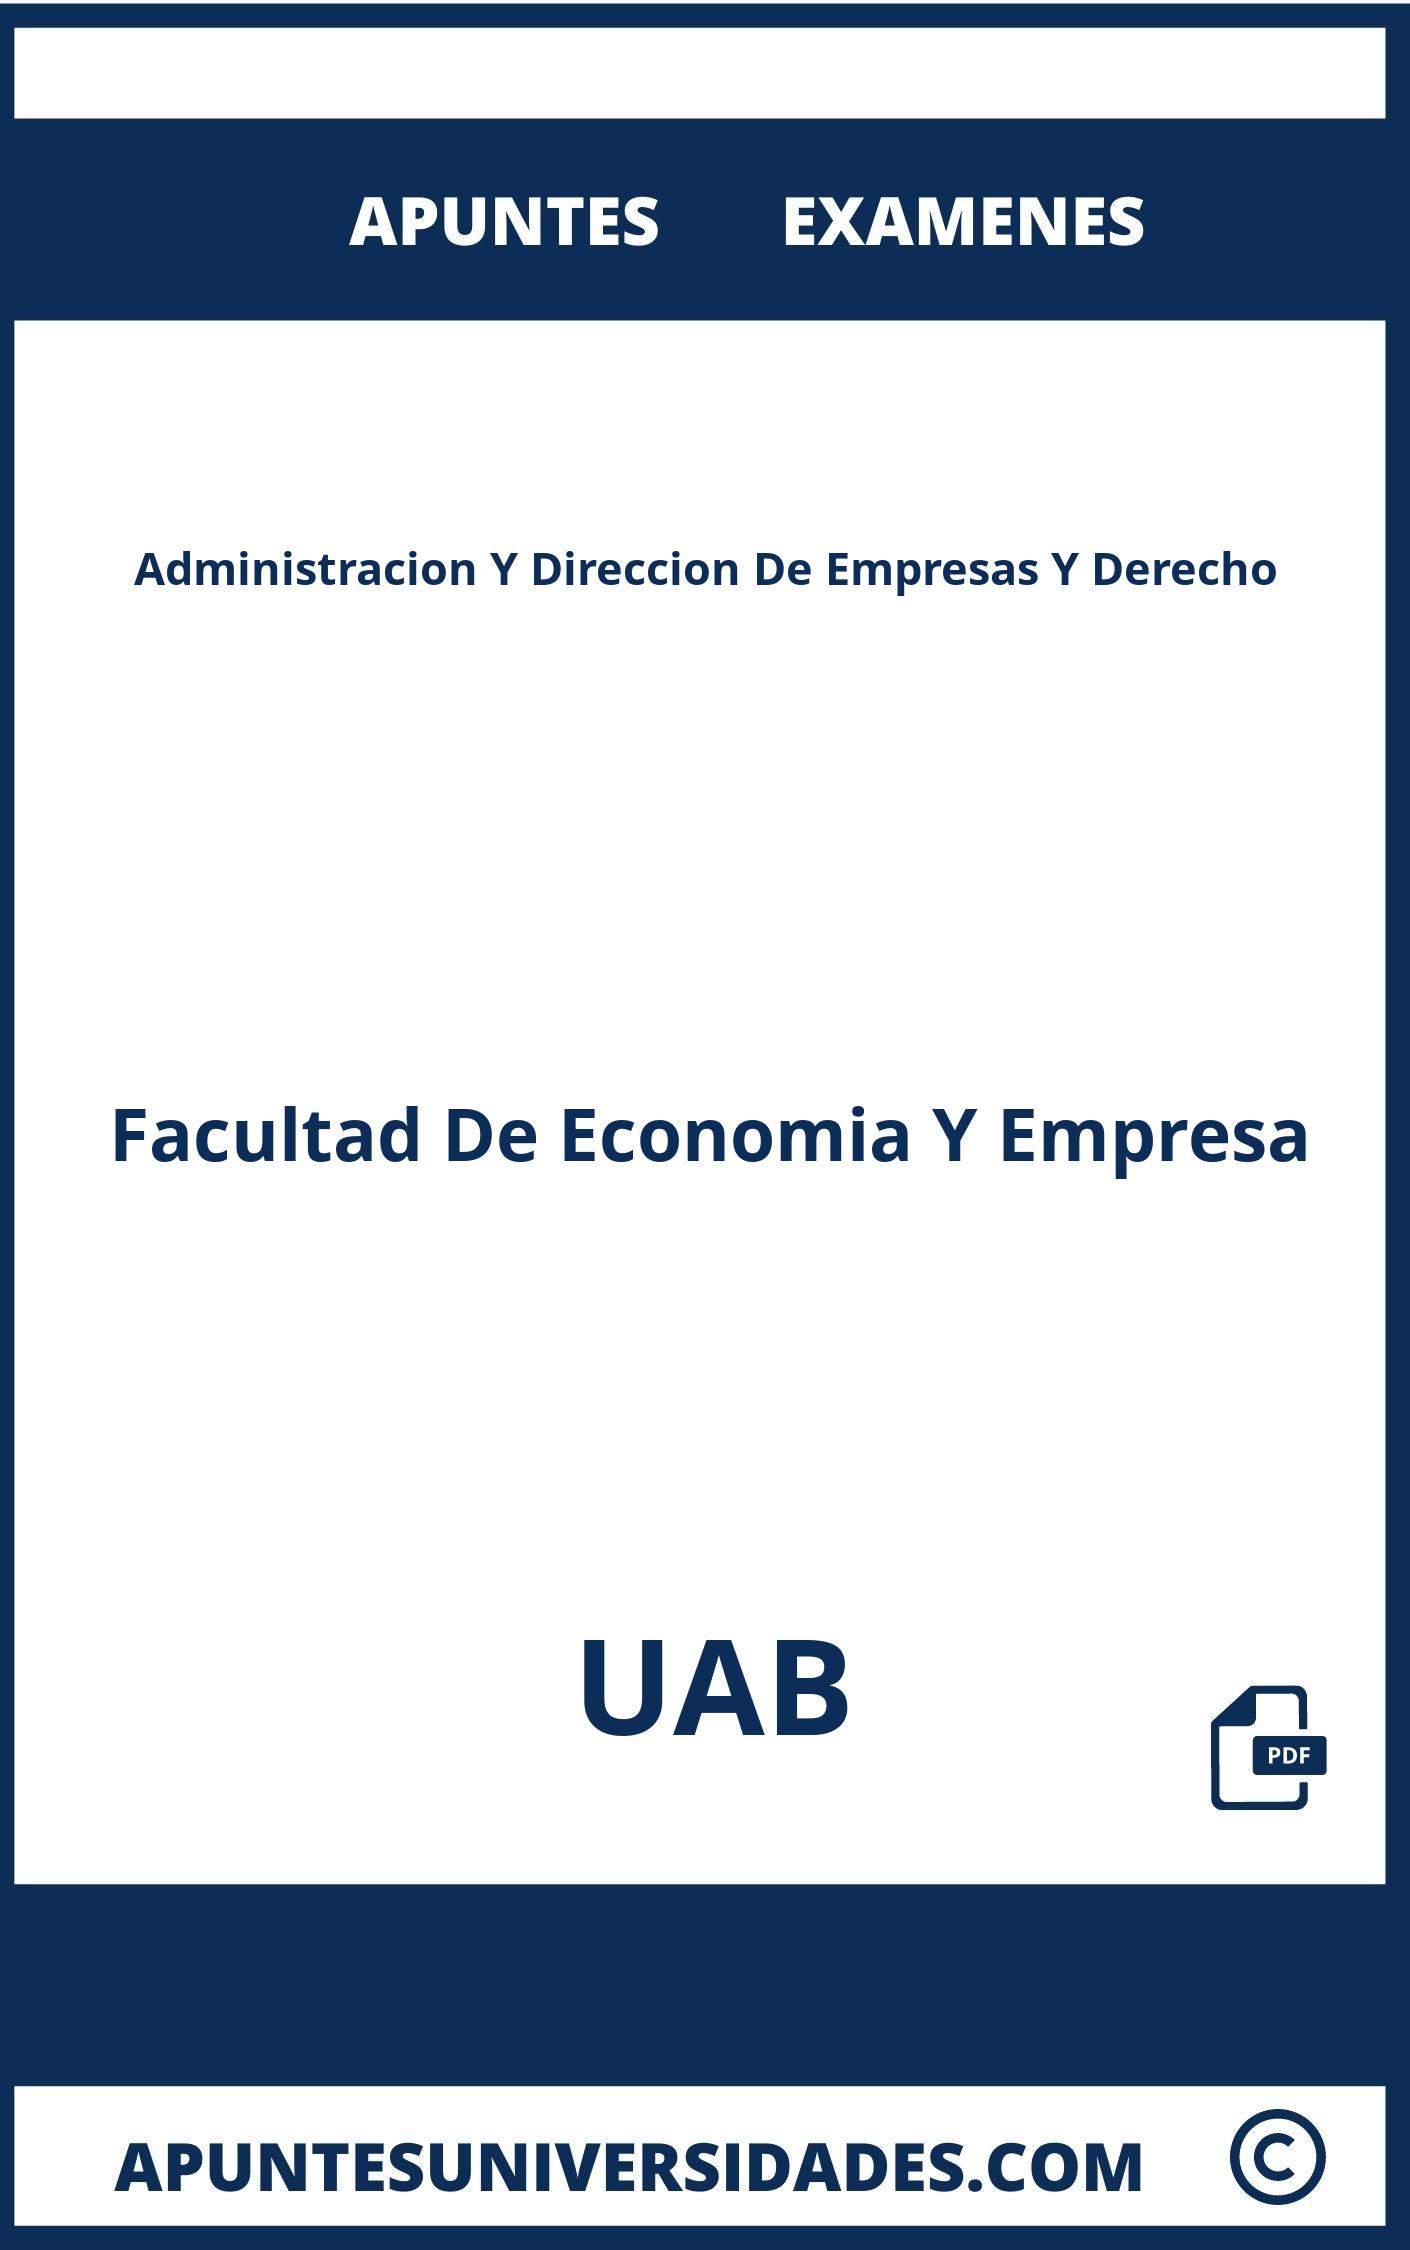 Examenes Apuntes Administracion Y Direccion De Empresas Y Derecho UAB